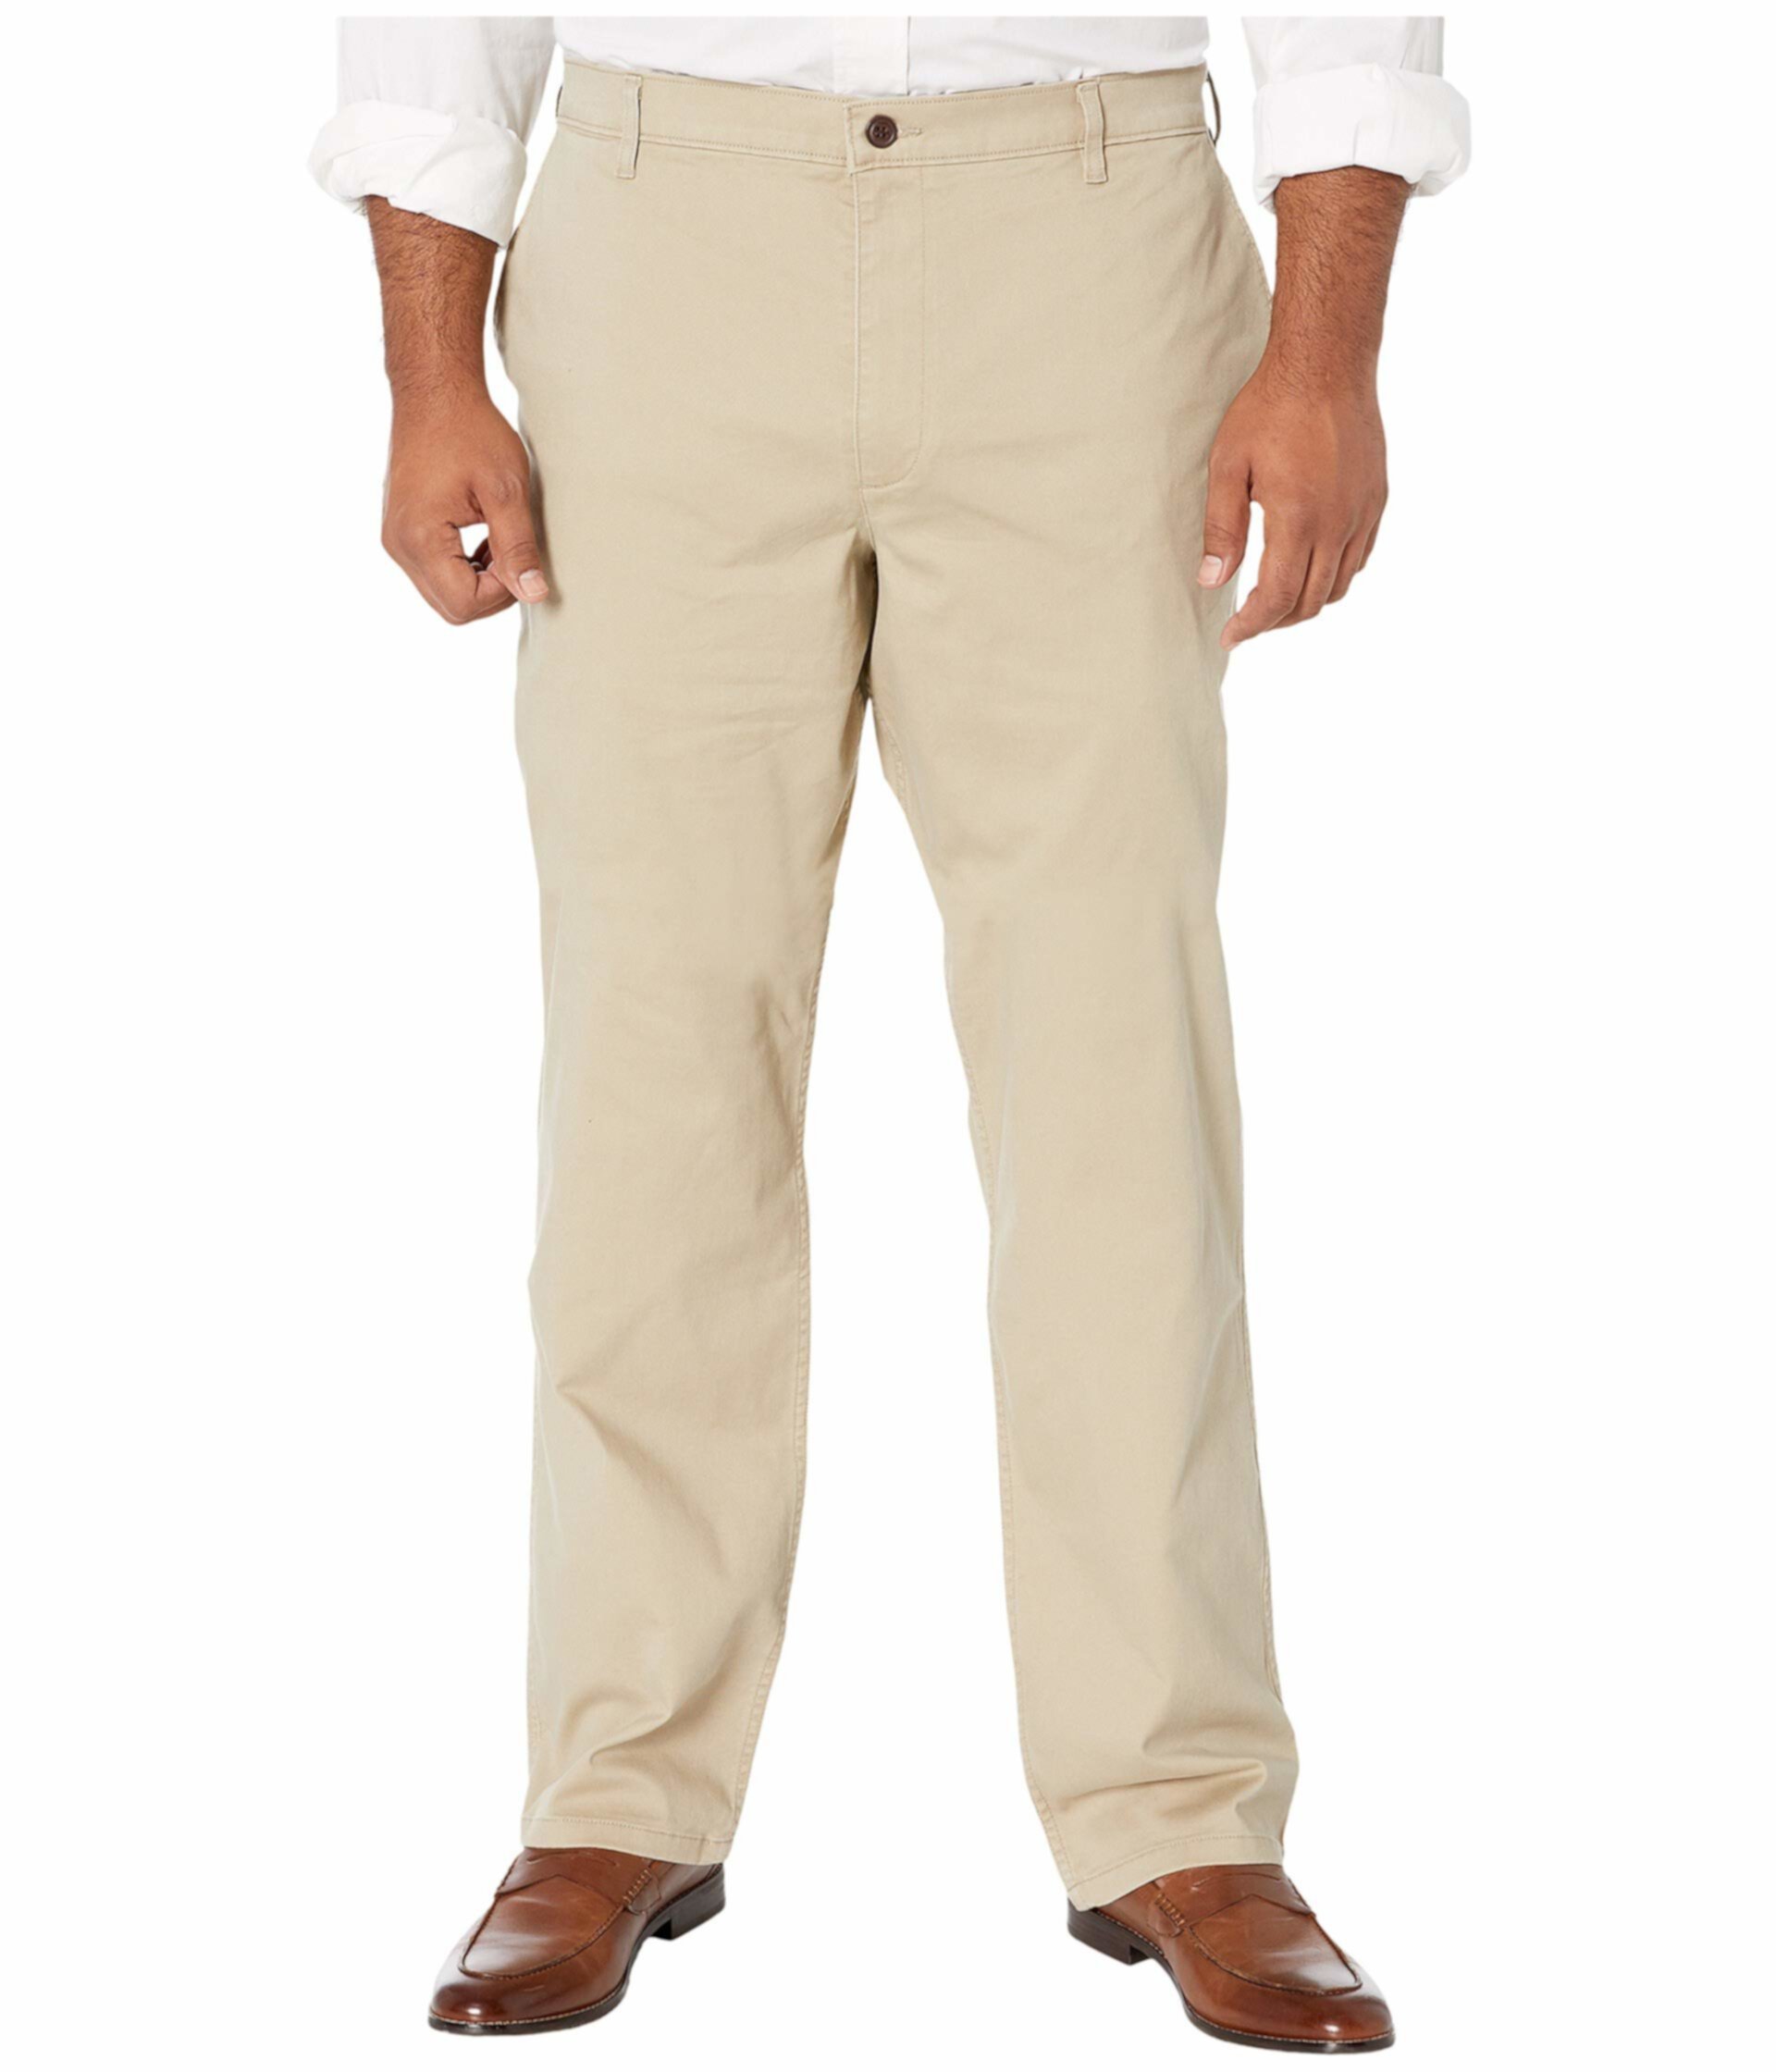 Большие и высокие конические брюки All Seasons Tech цвета хаки Dockers